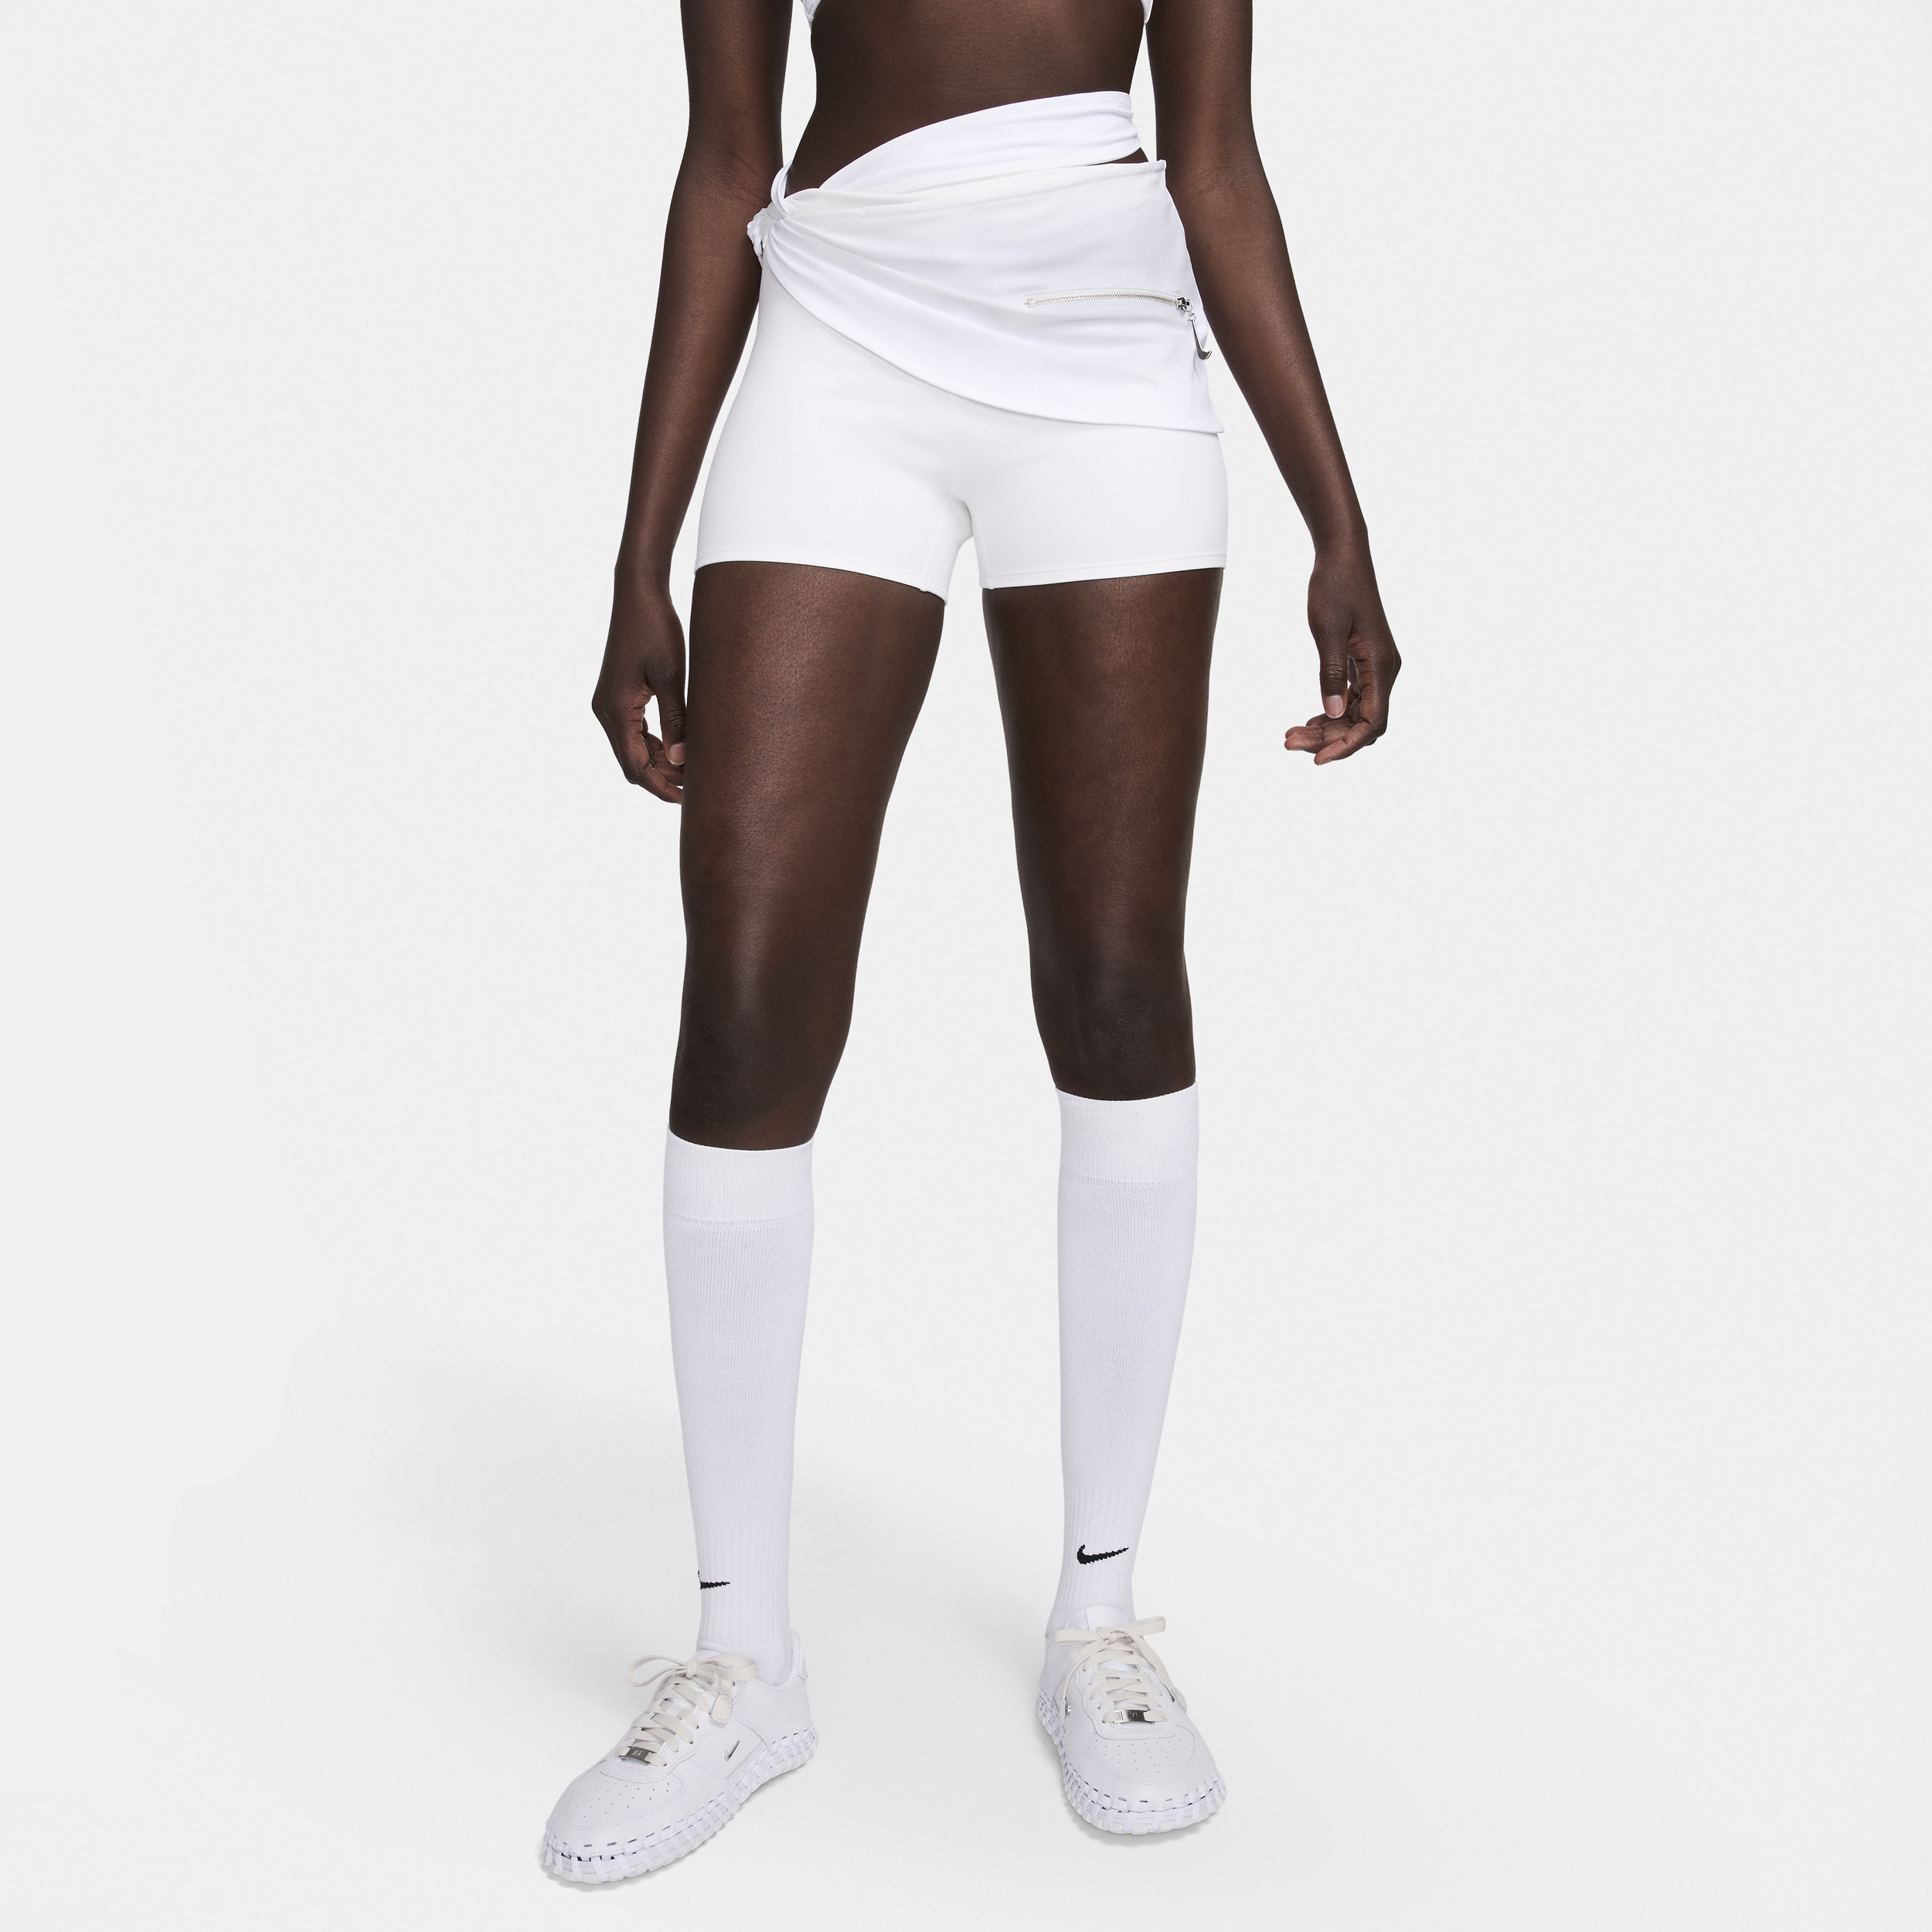 Lagdelte Nike x Jacquemus-shorts til kvinder - hvid